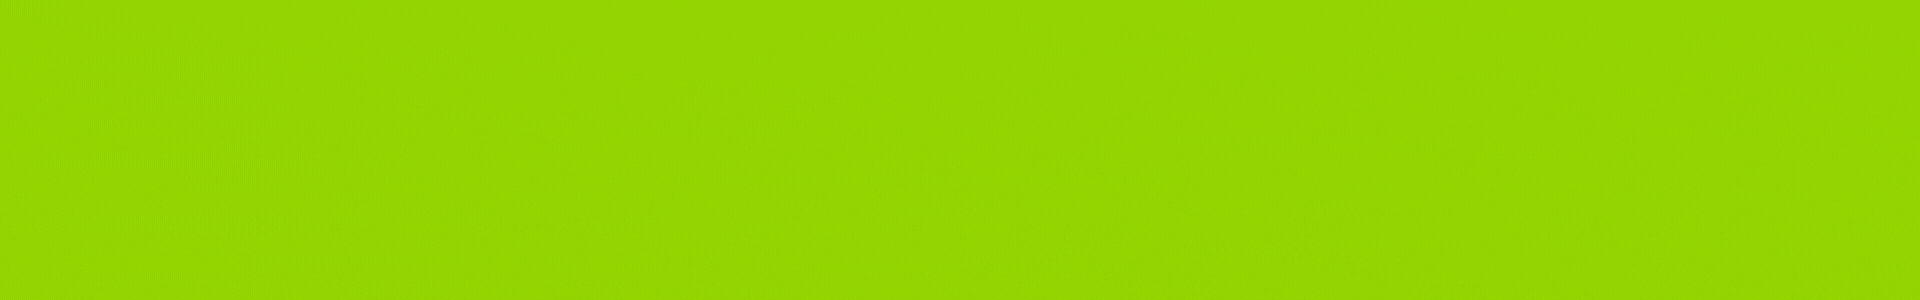 Scrum Extendido Banner Verde - GioSyst3m